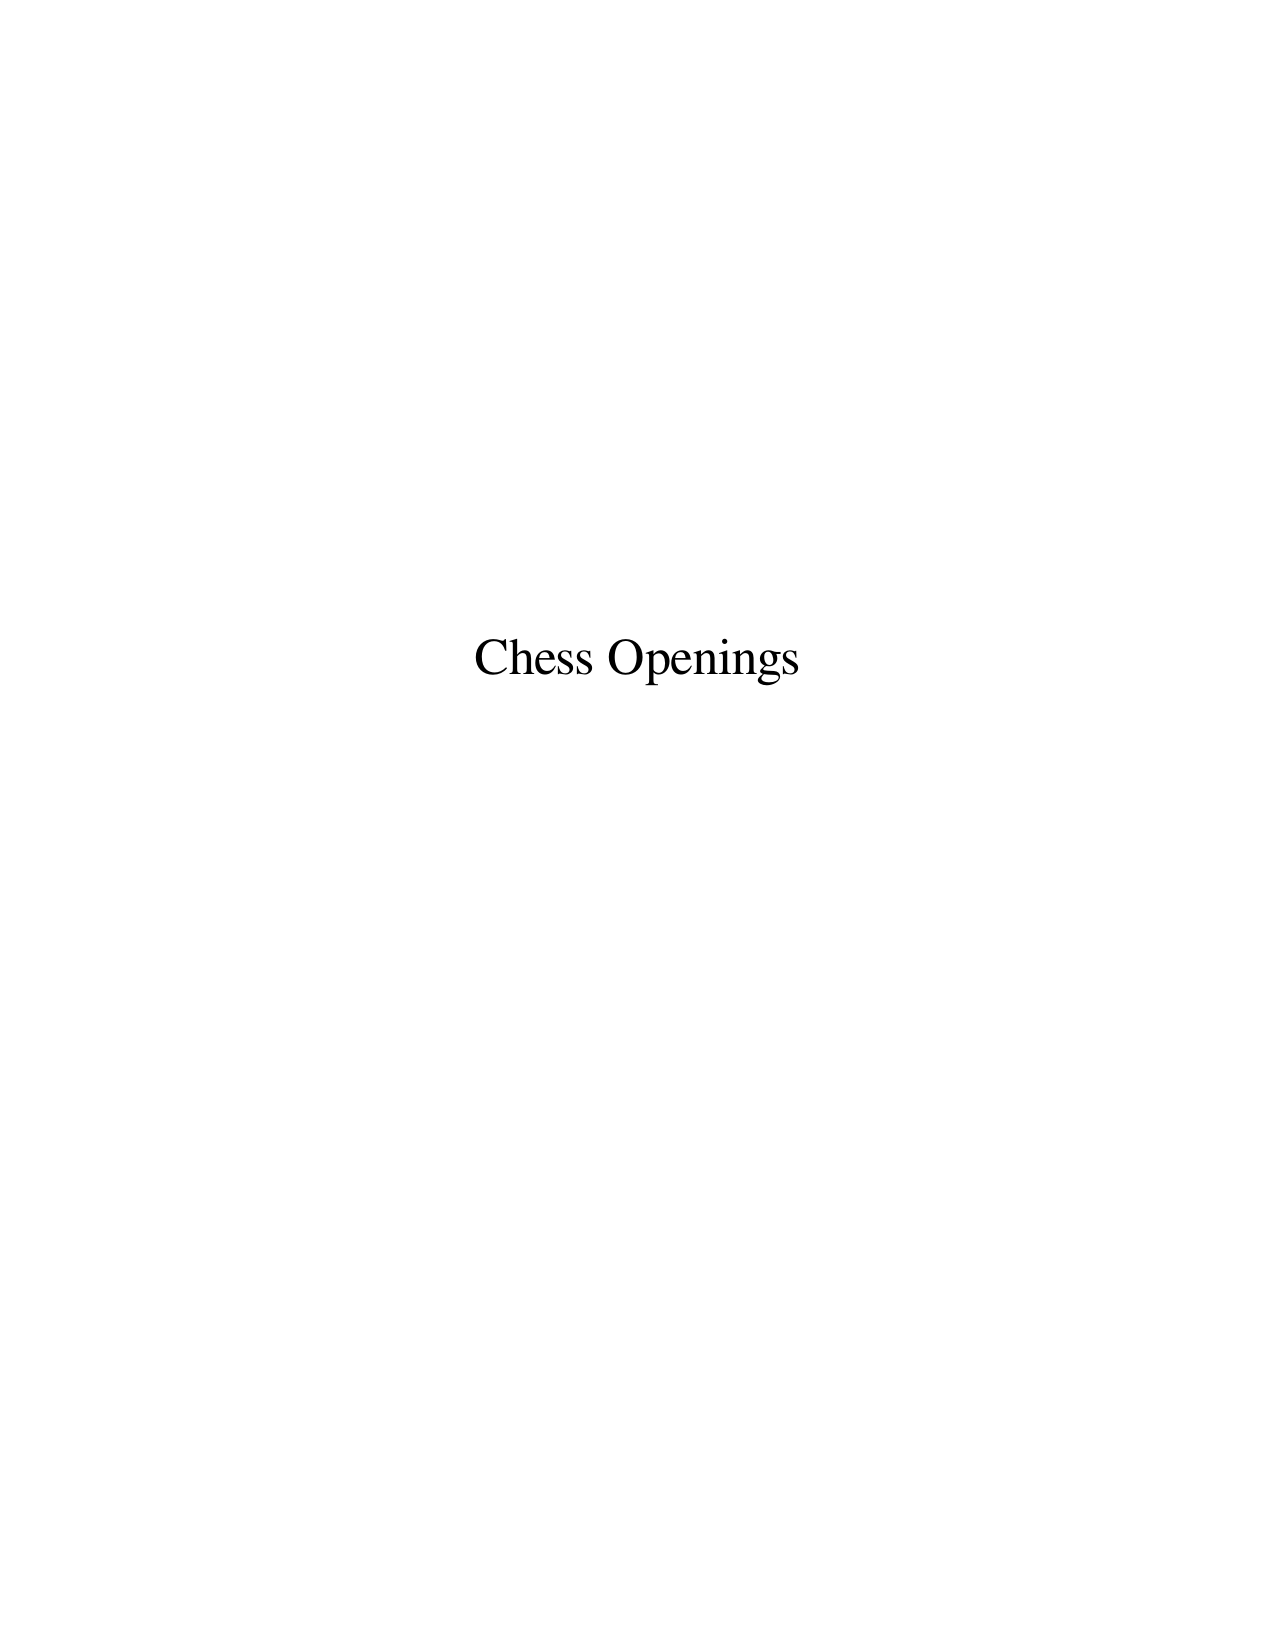 Fritz Opening Trainer: Unorthodox Chess Openings